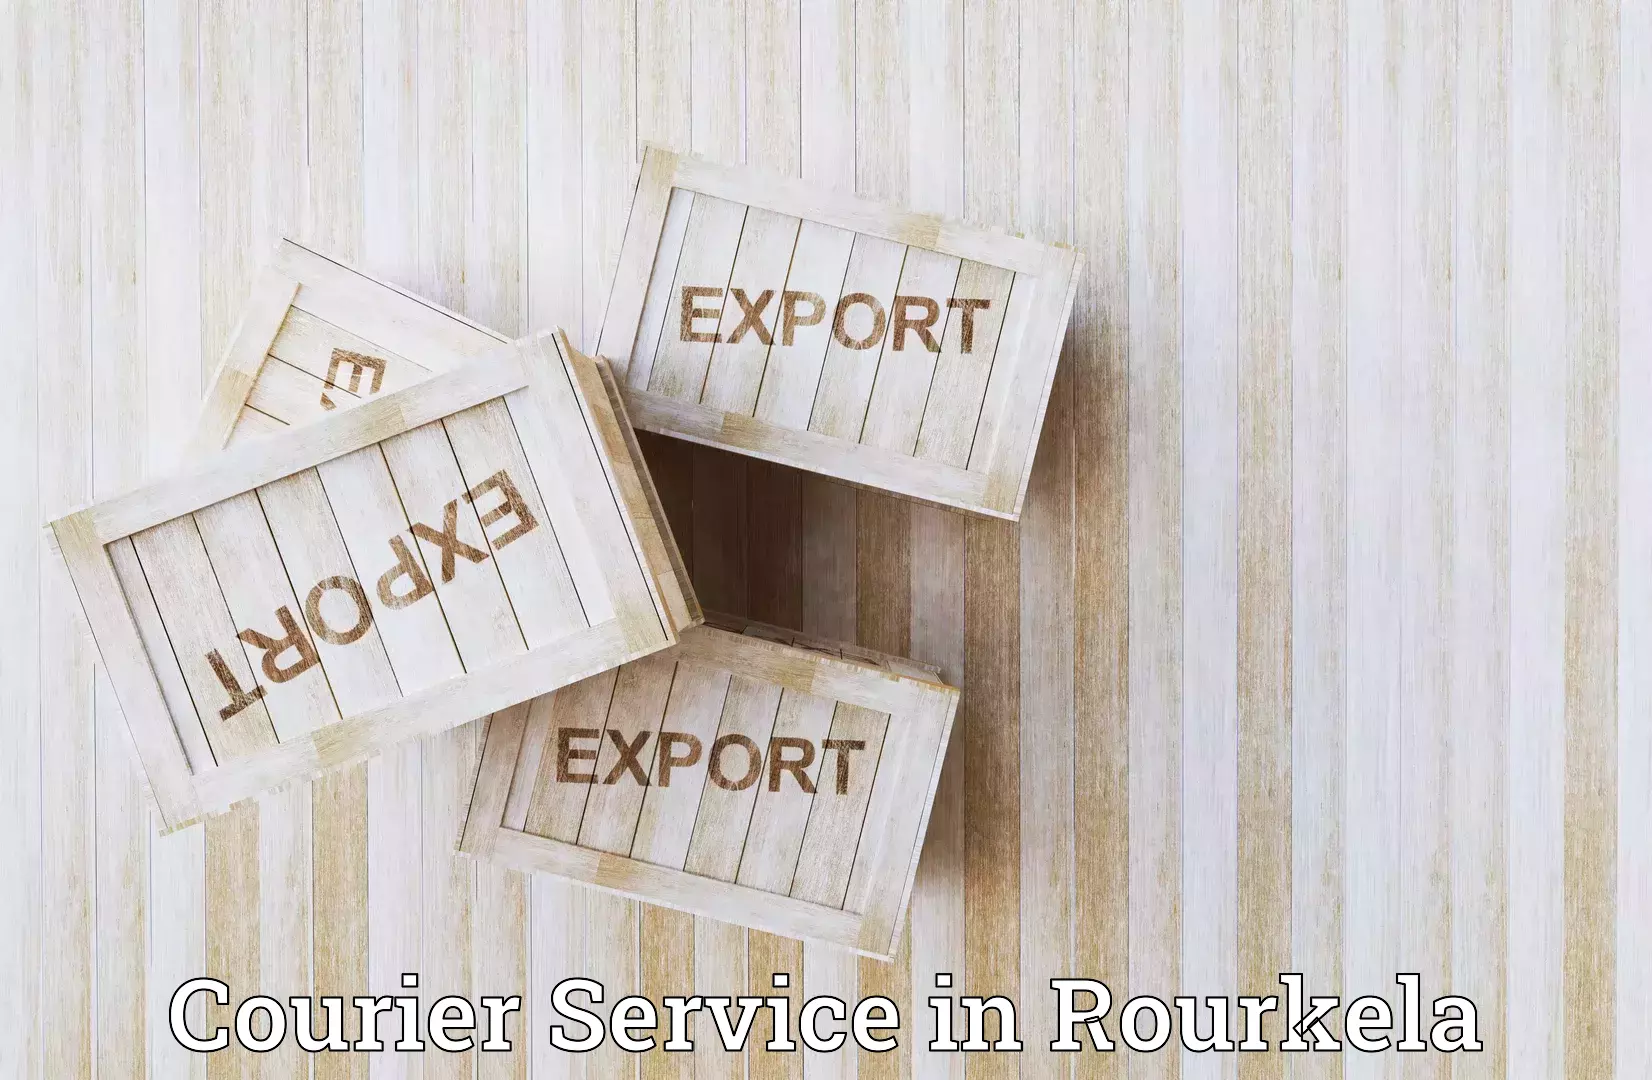 Package forwarding in Rourkela